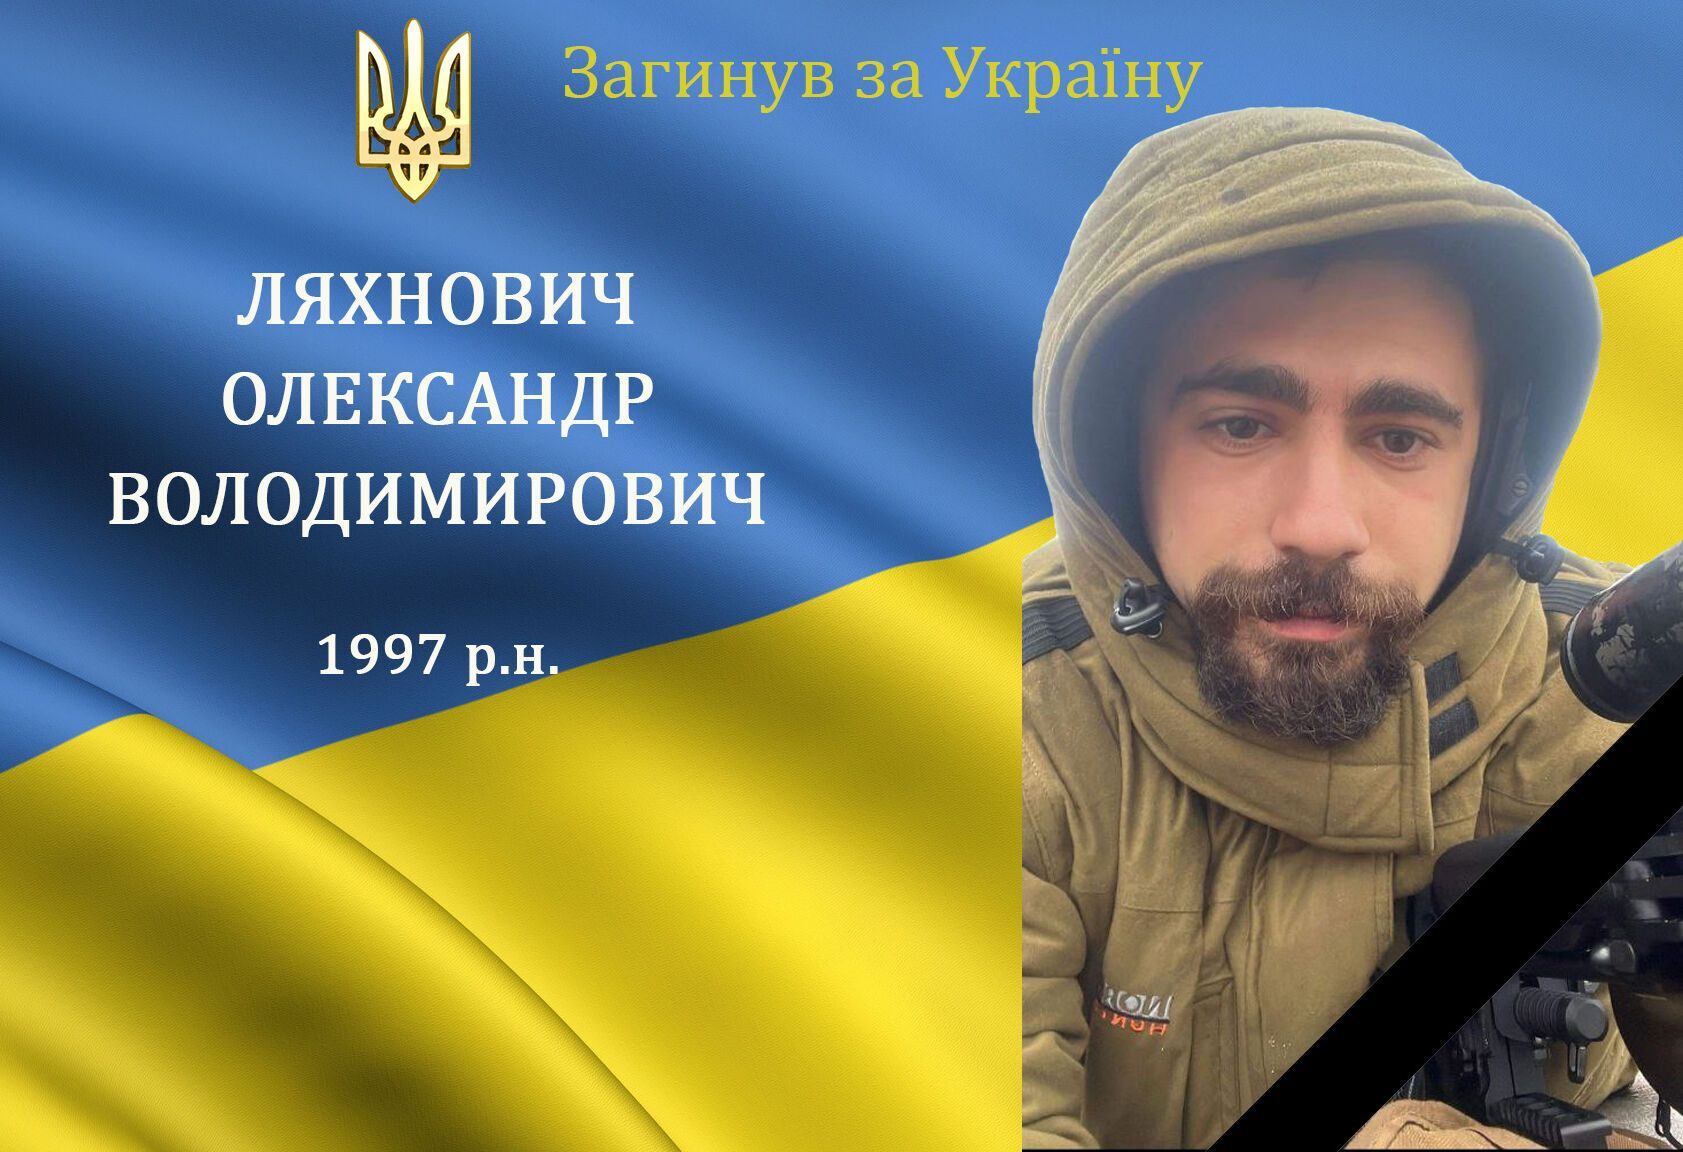 ''Верный сын своего народа'': в боях за Украину погиб 25-летний защитник из Винницкой области. Фото